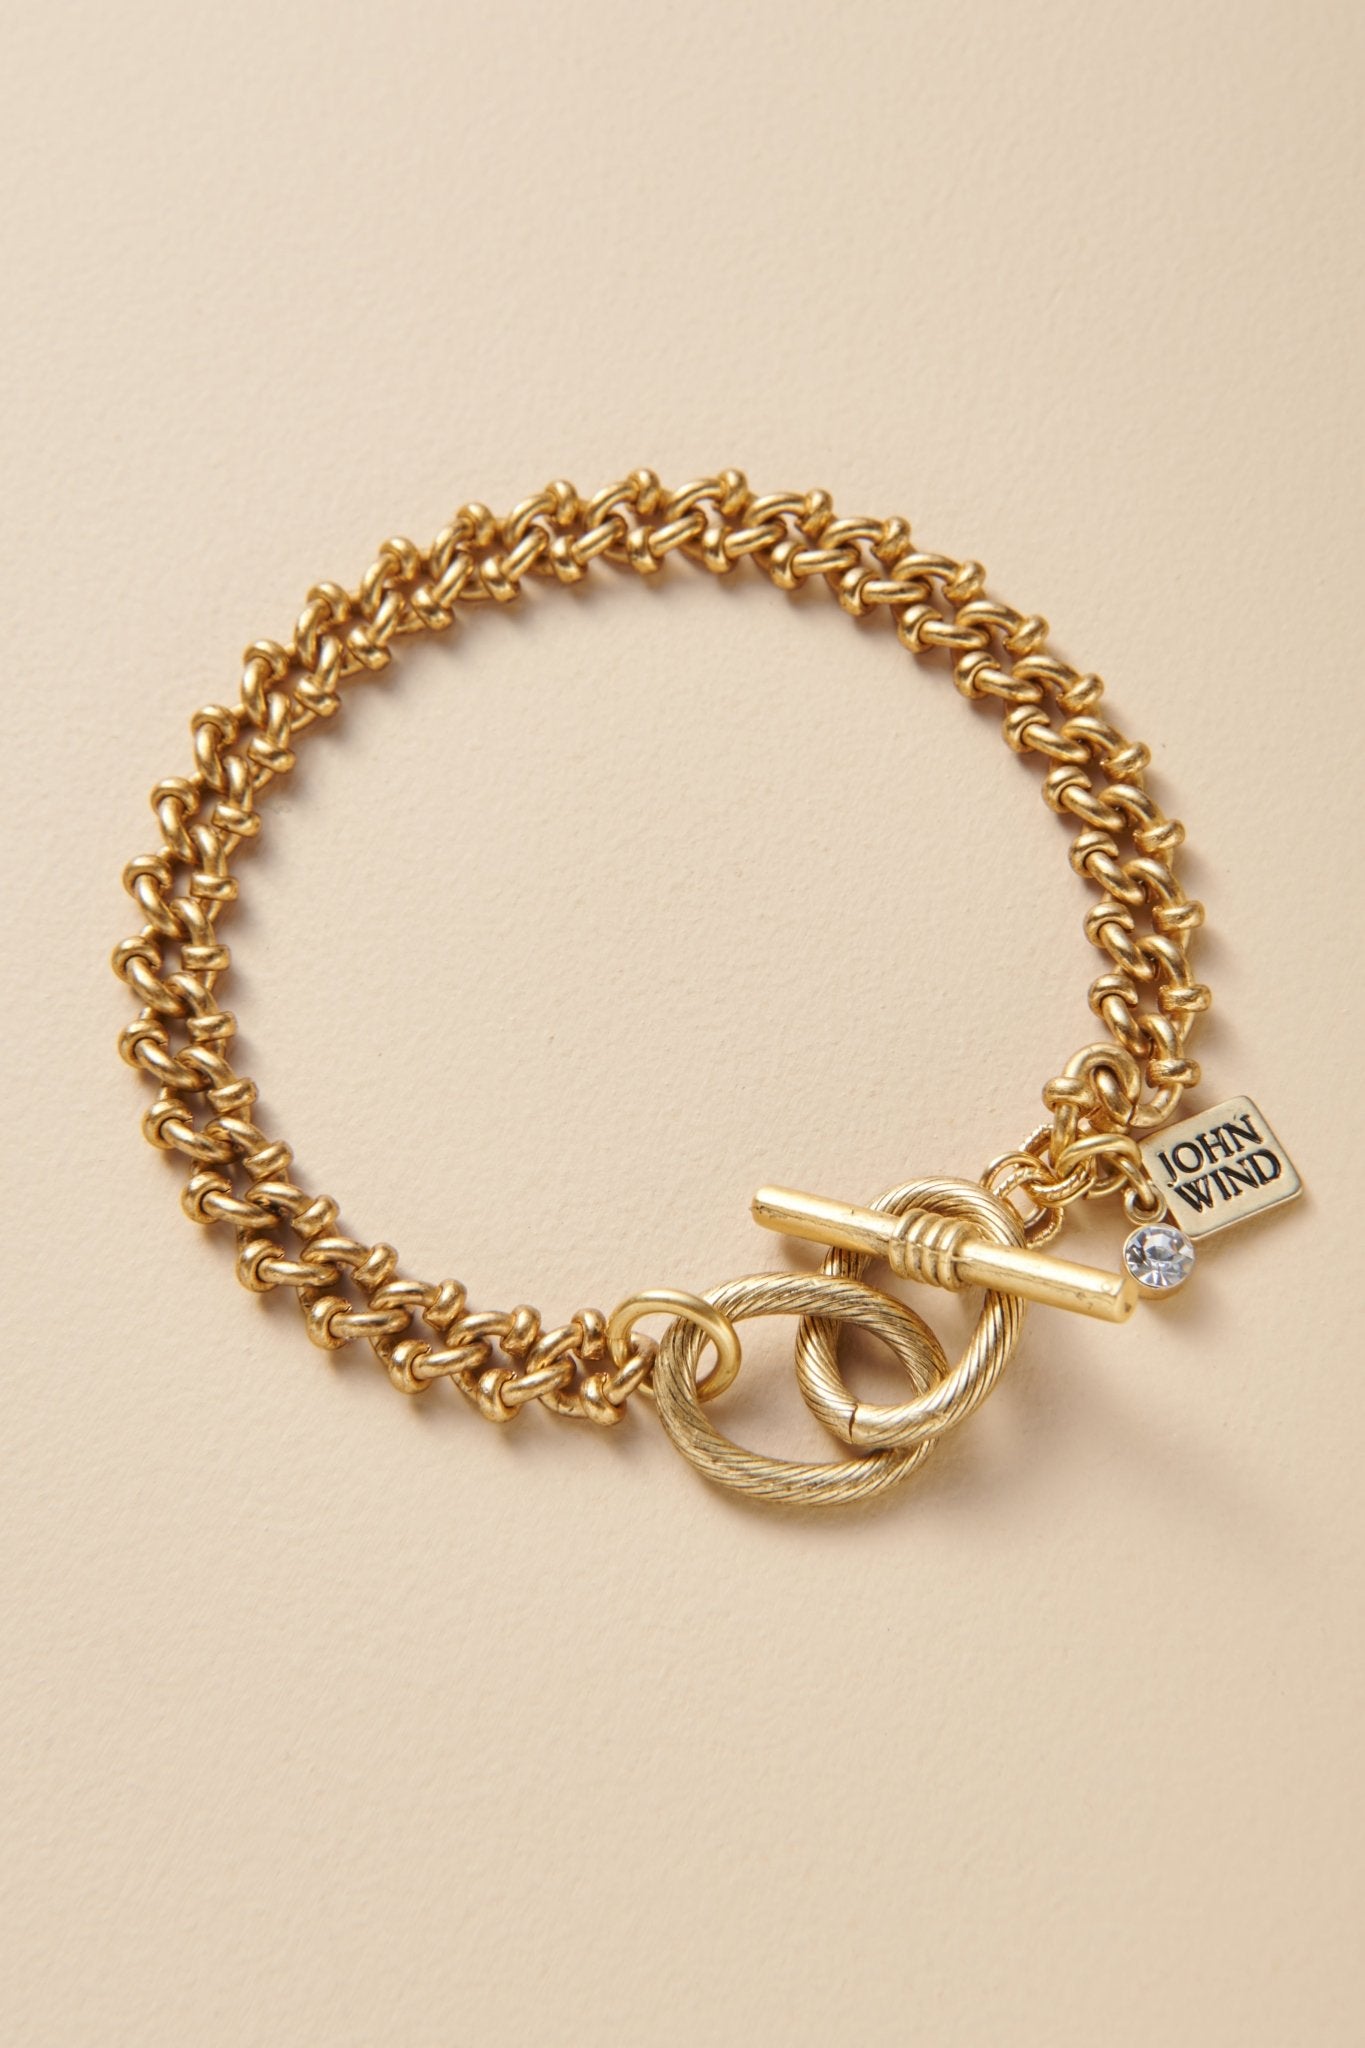 Enamel Chain Link Bracelet - Hello Supply Modern Jewelry